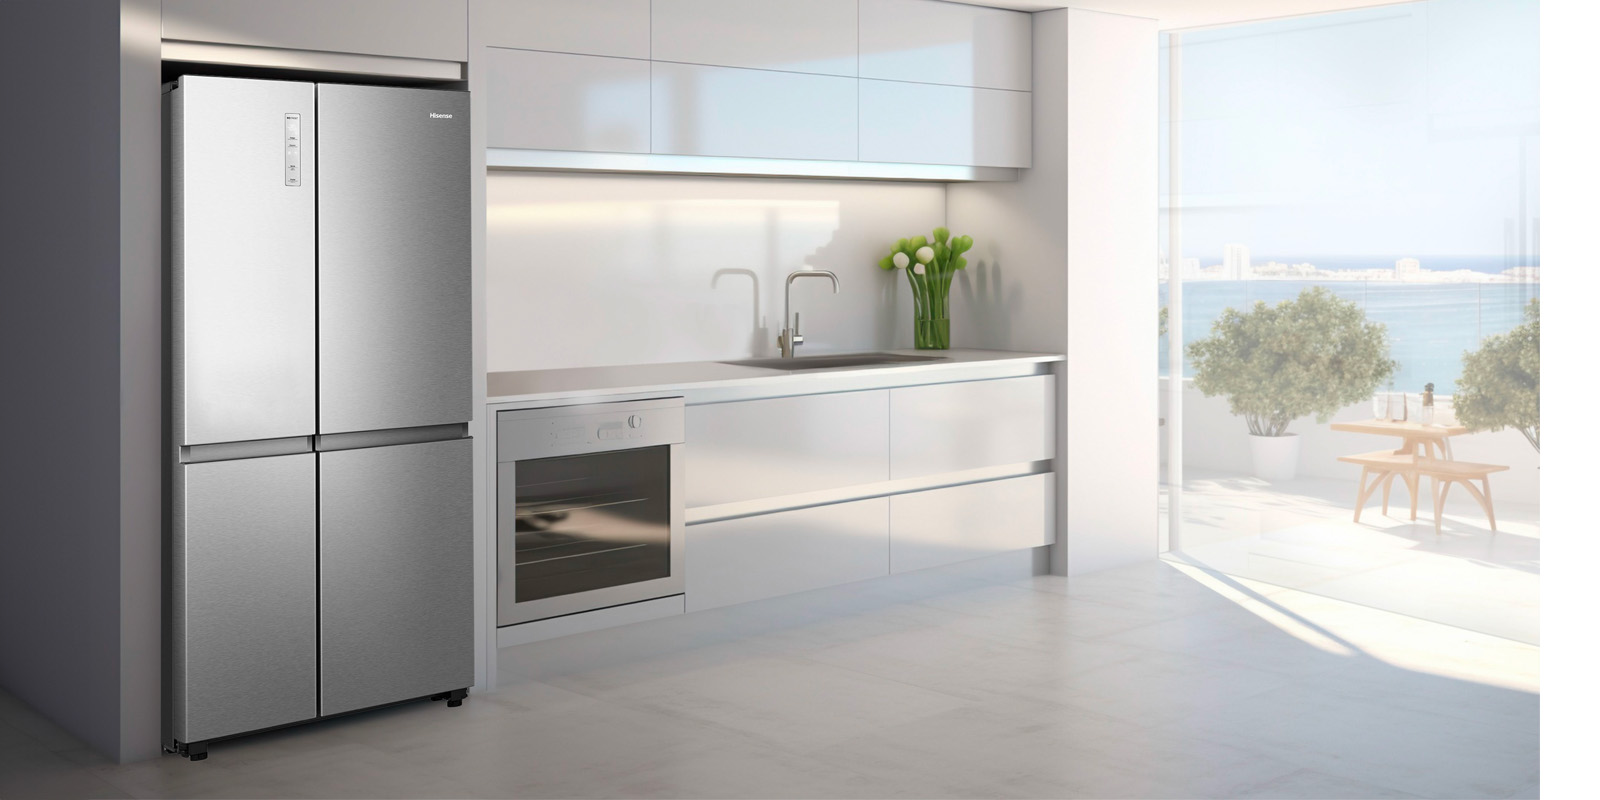 Гаджеты для кухни: большой холодильник с Wi-Fi-управлением 